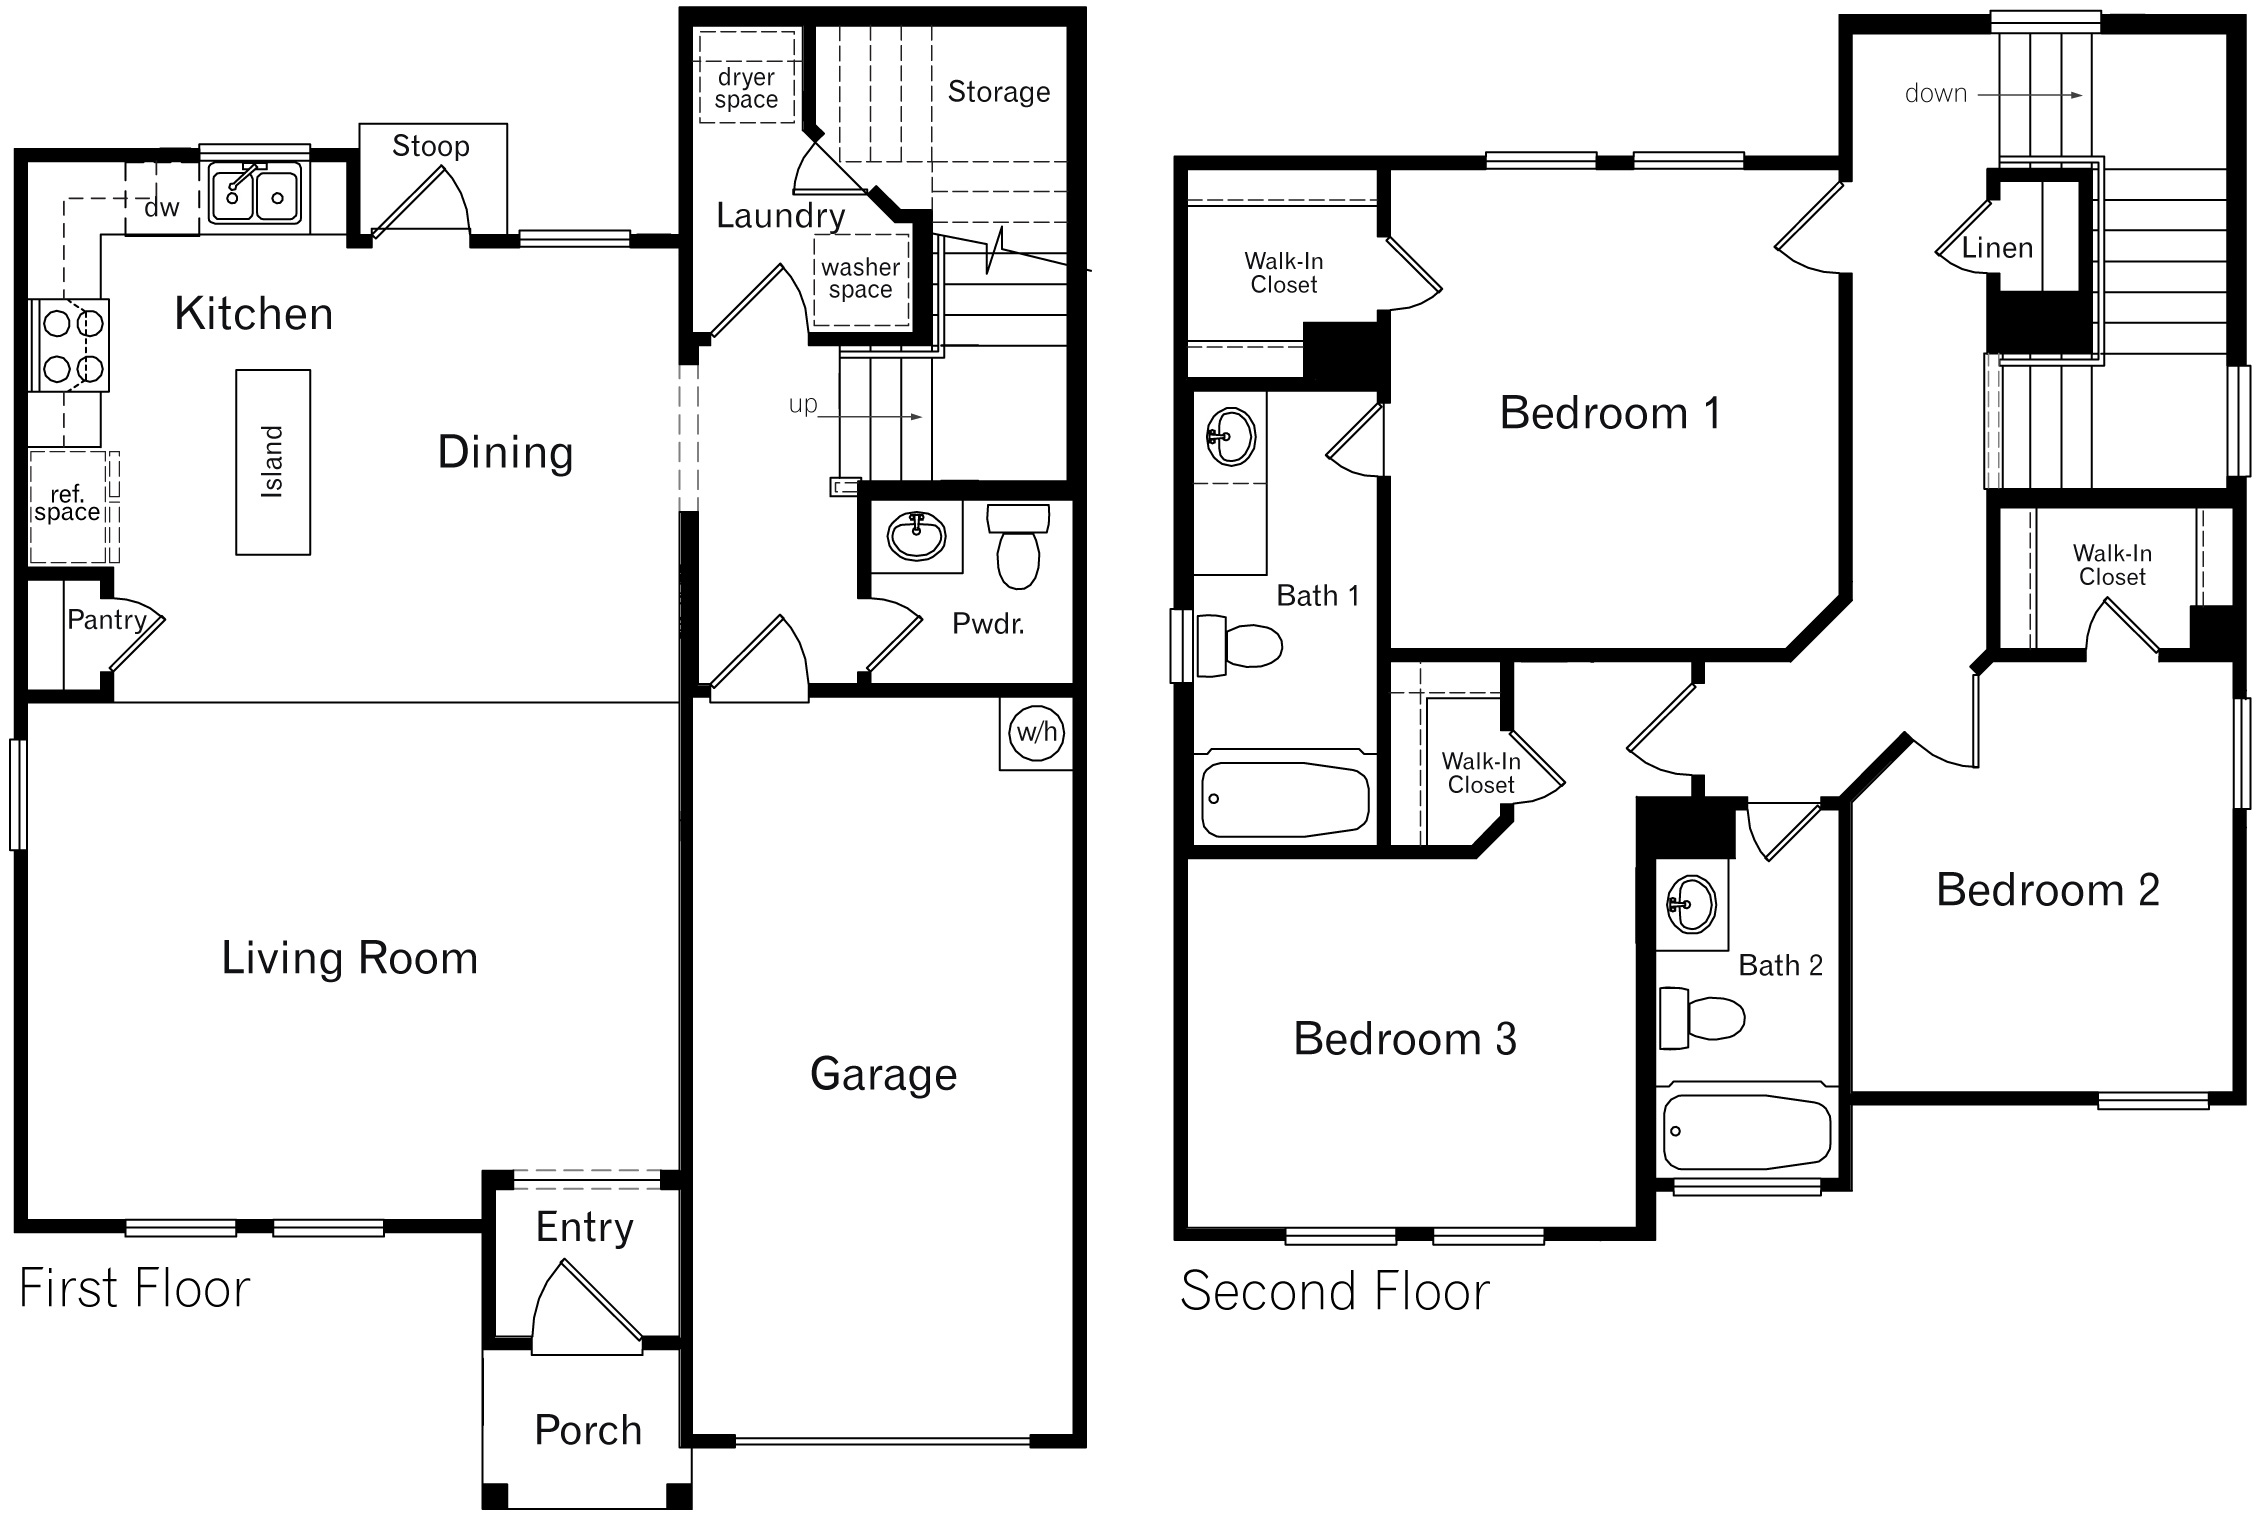 DR Horton San Antonio Laurel Vistas the ellington floor plan 1508 square feet 3 bedroom 2.5 bathrooms 2 story 1 car garage